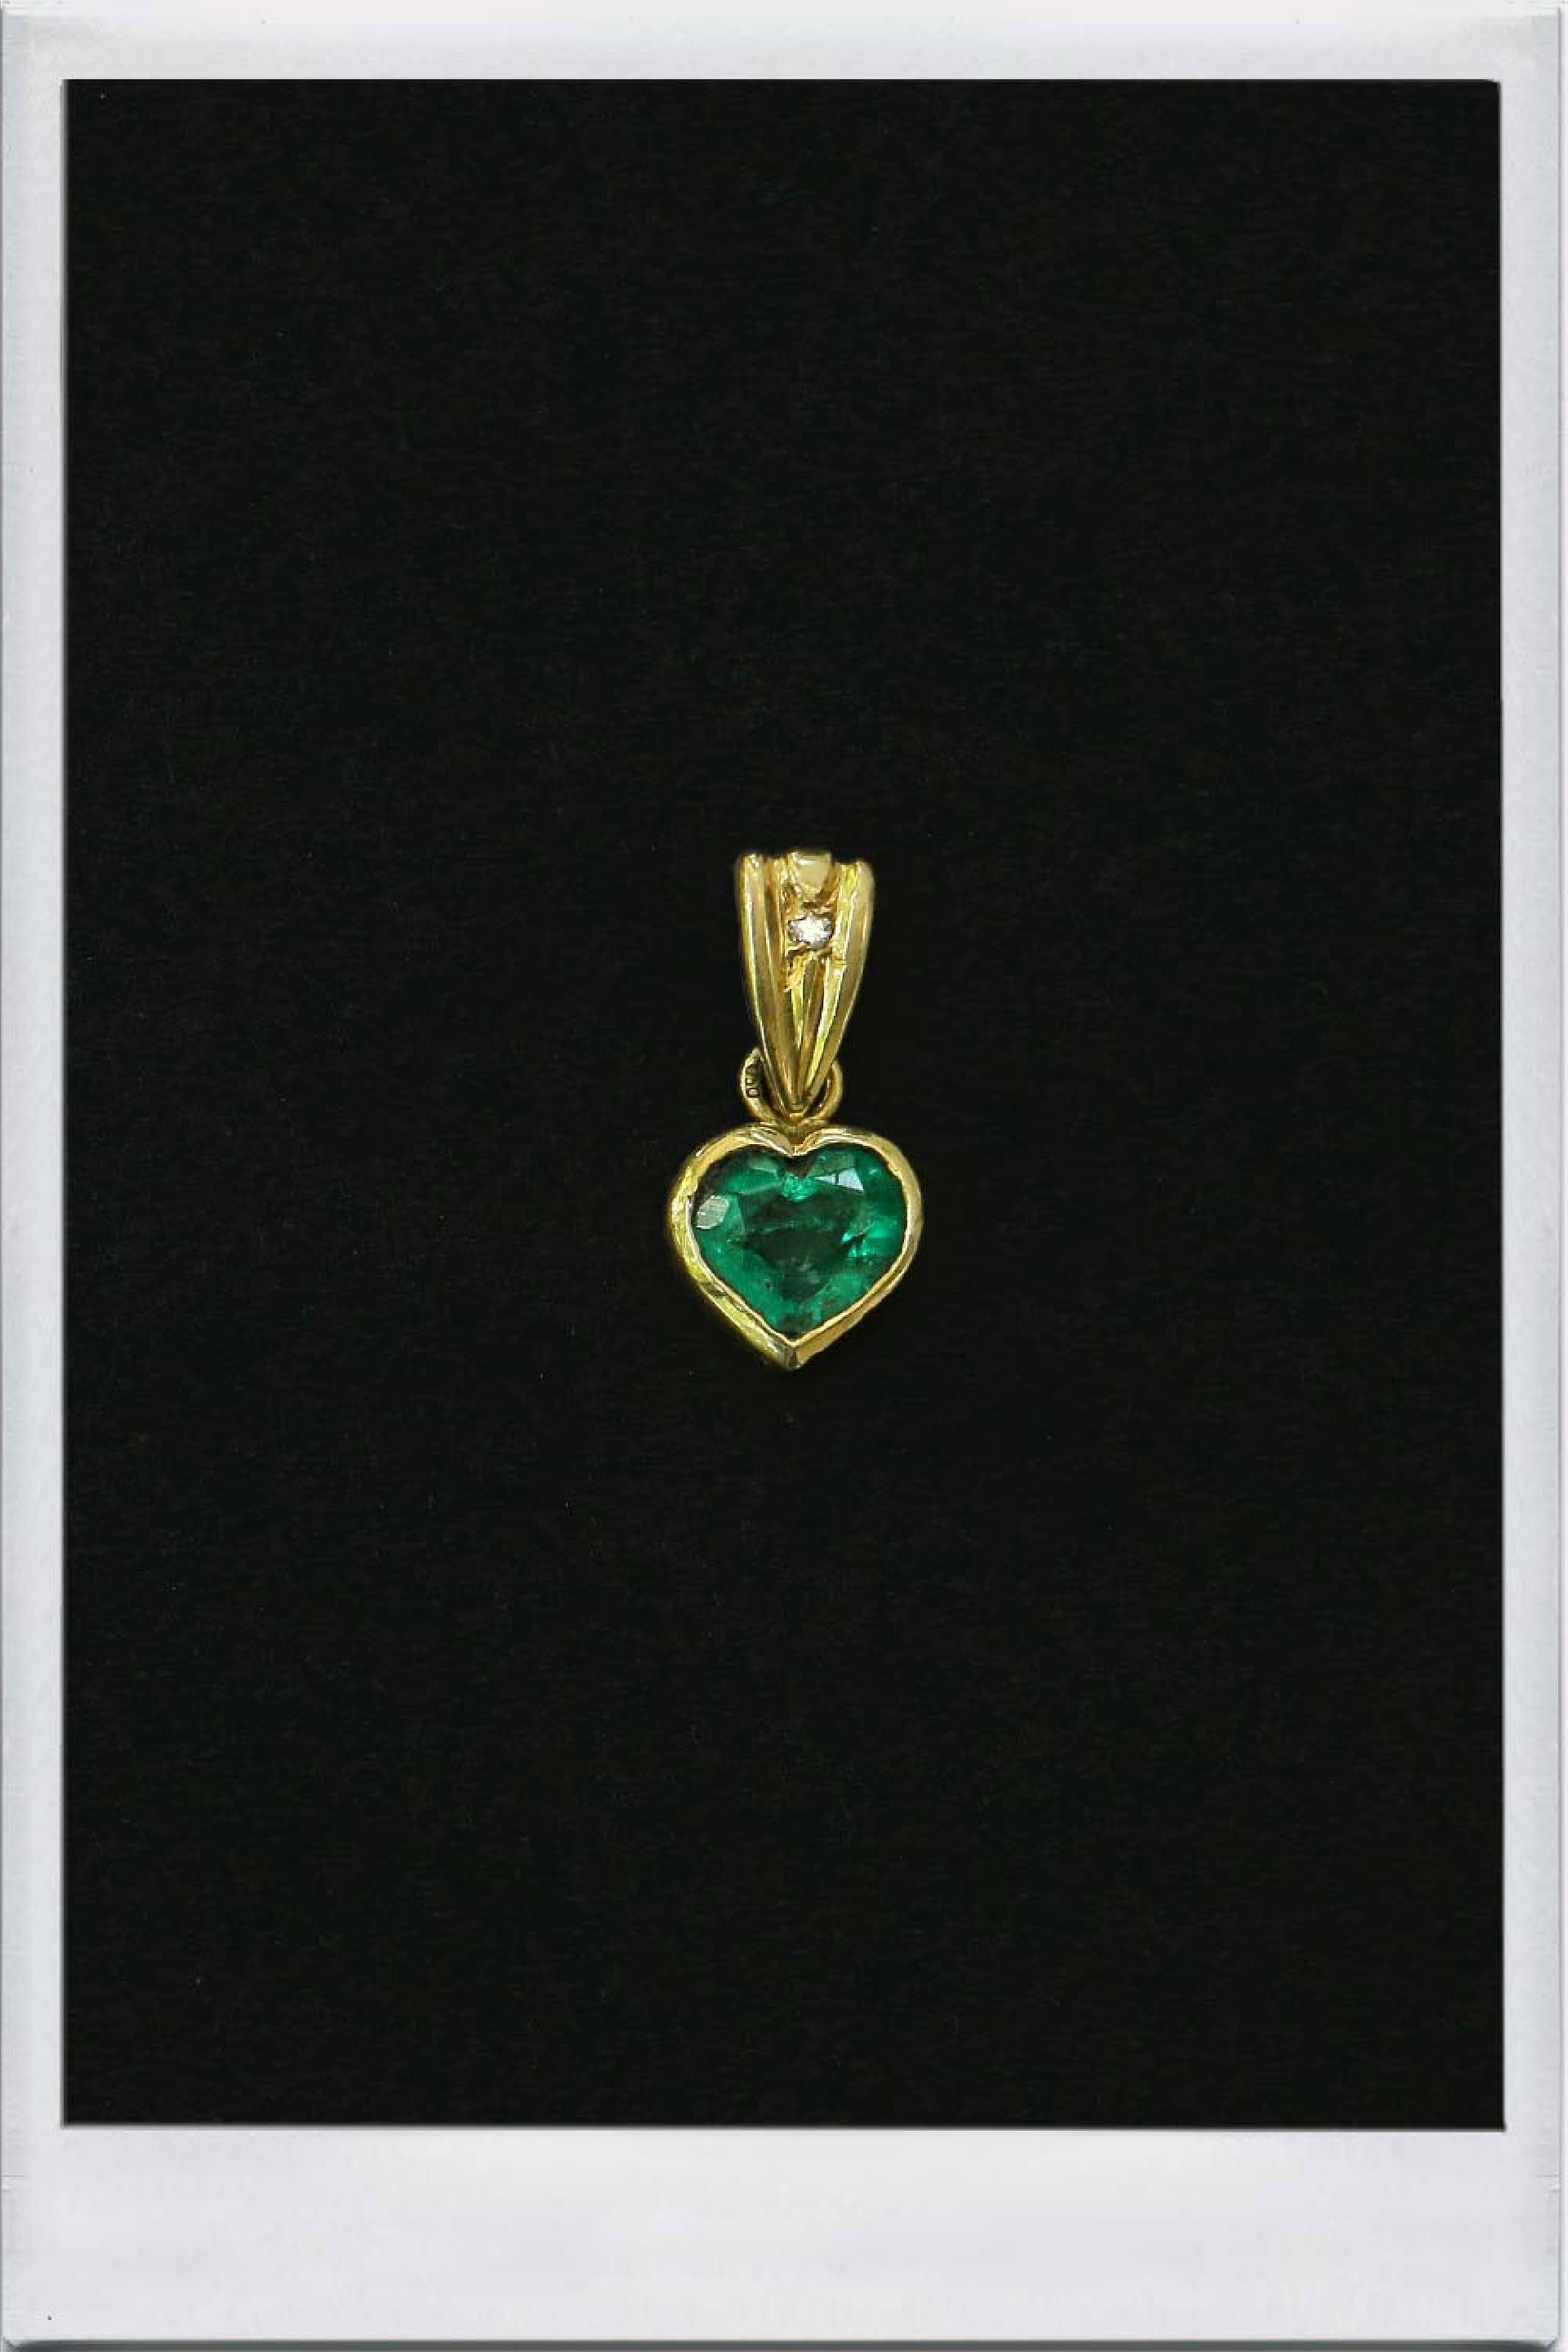 Emerald heart